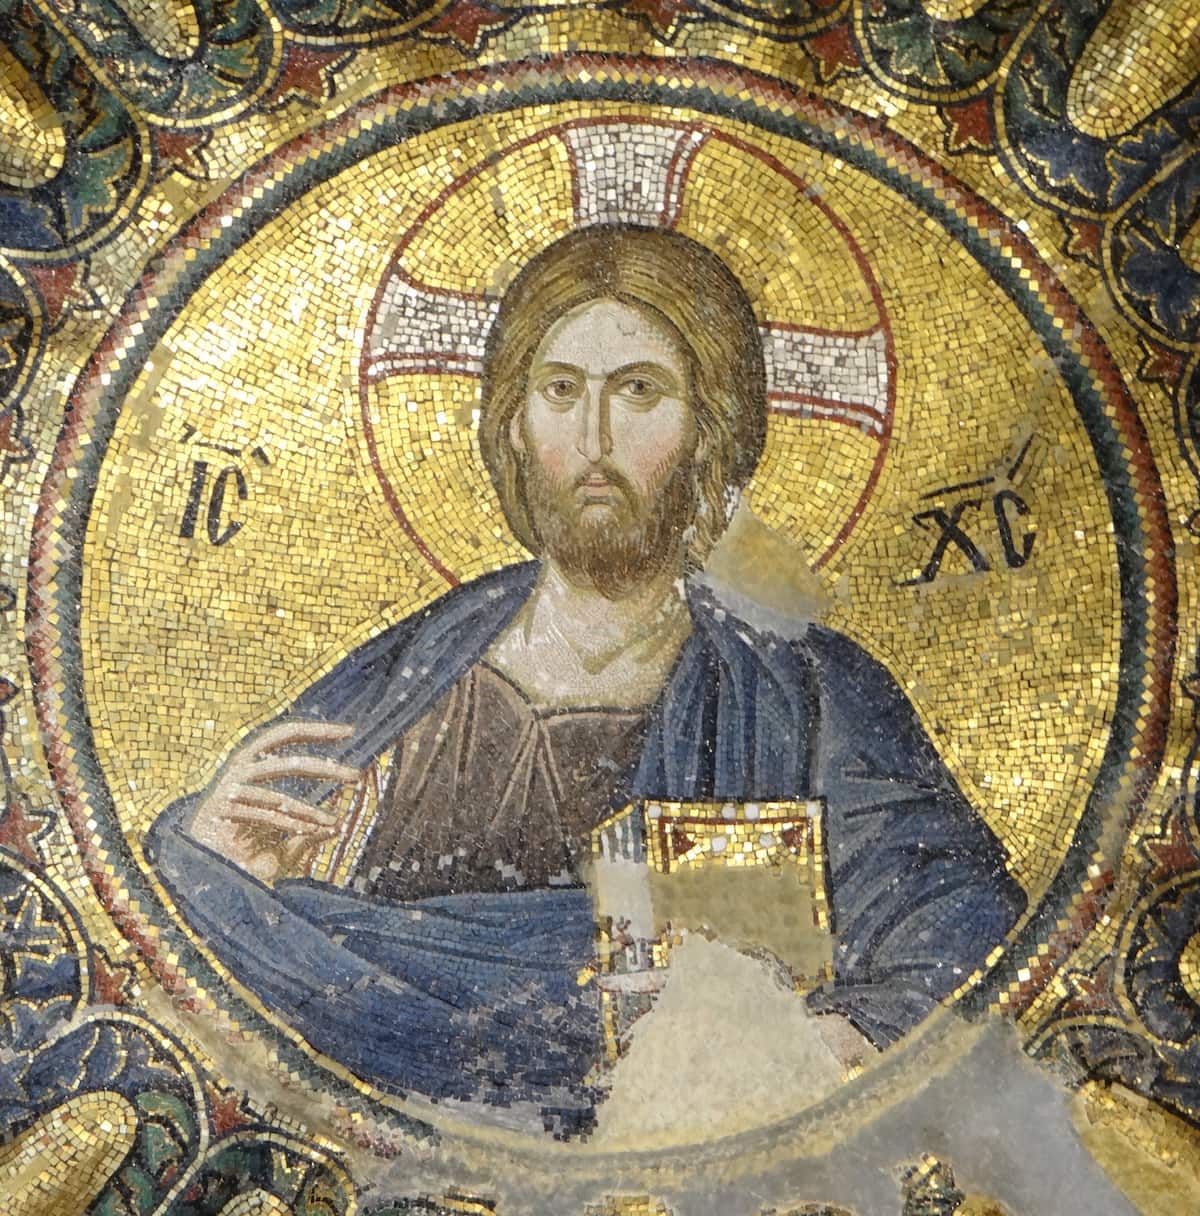 Byzantinische Kunst